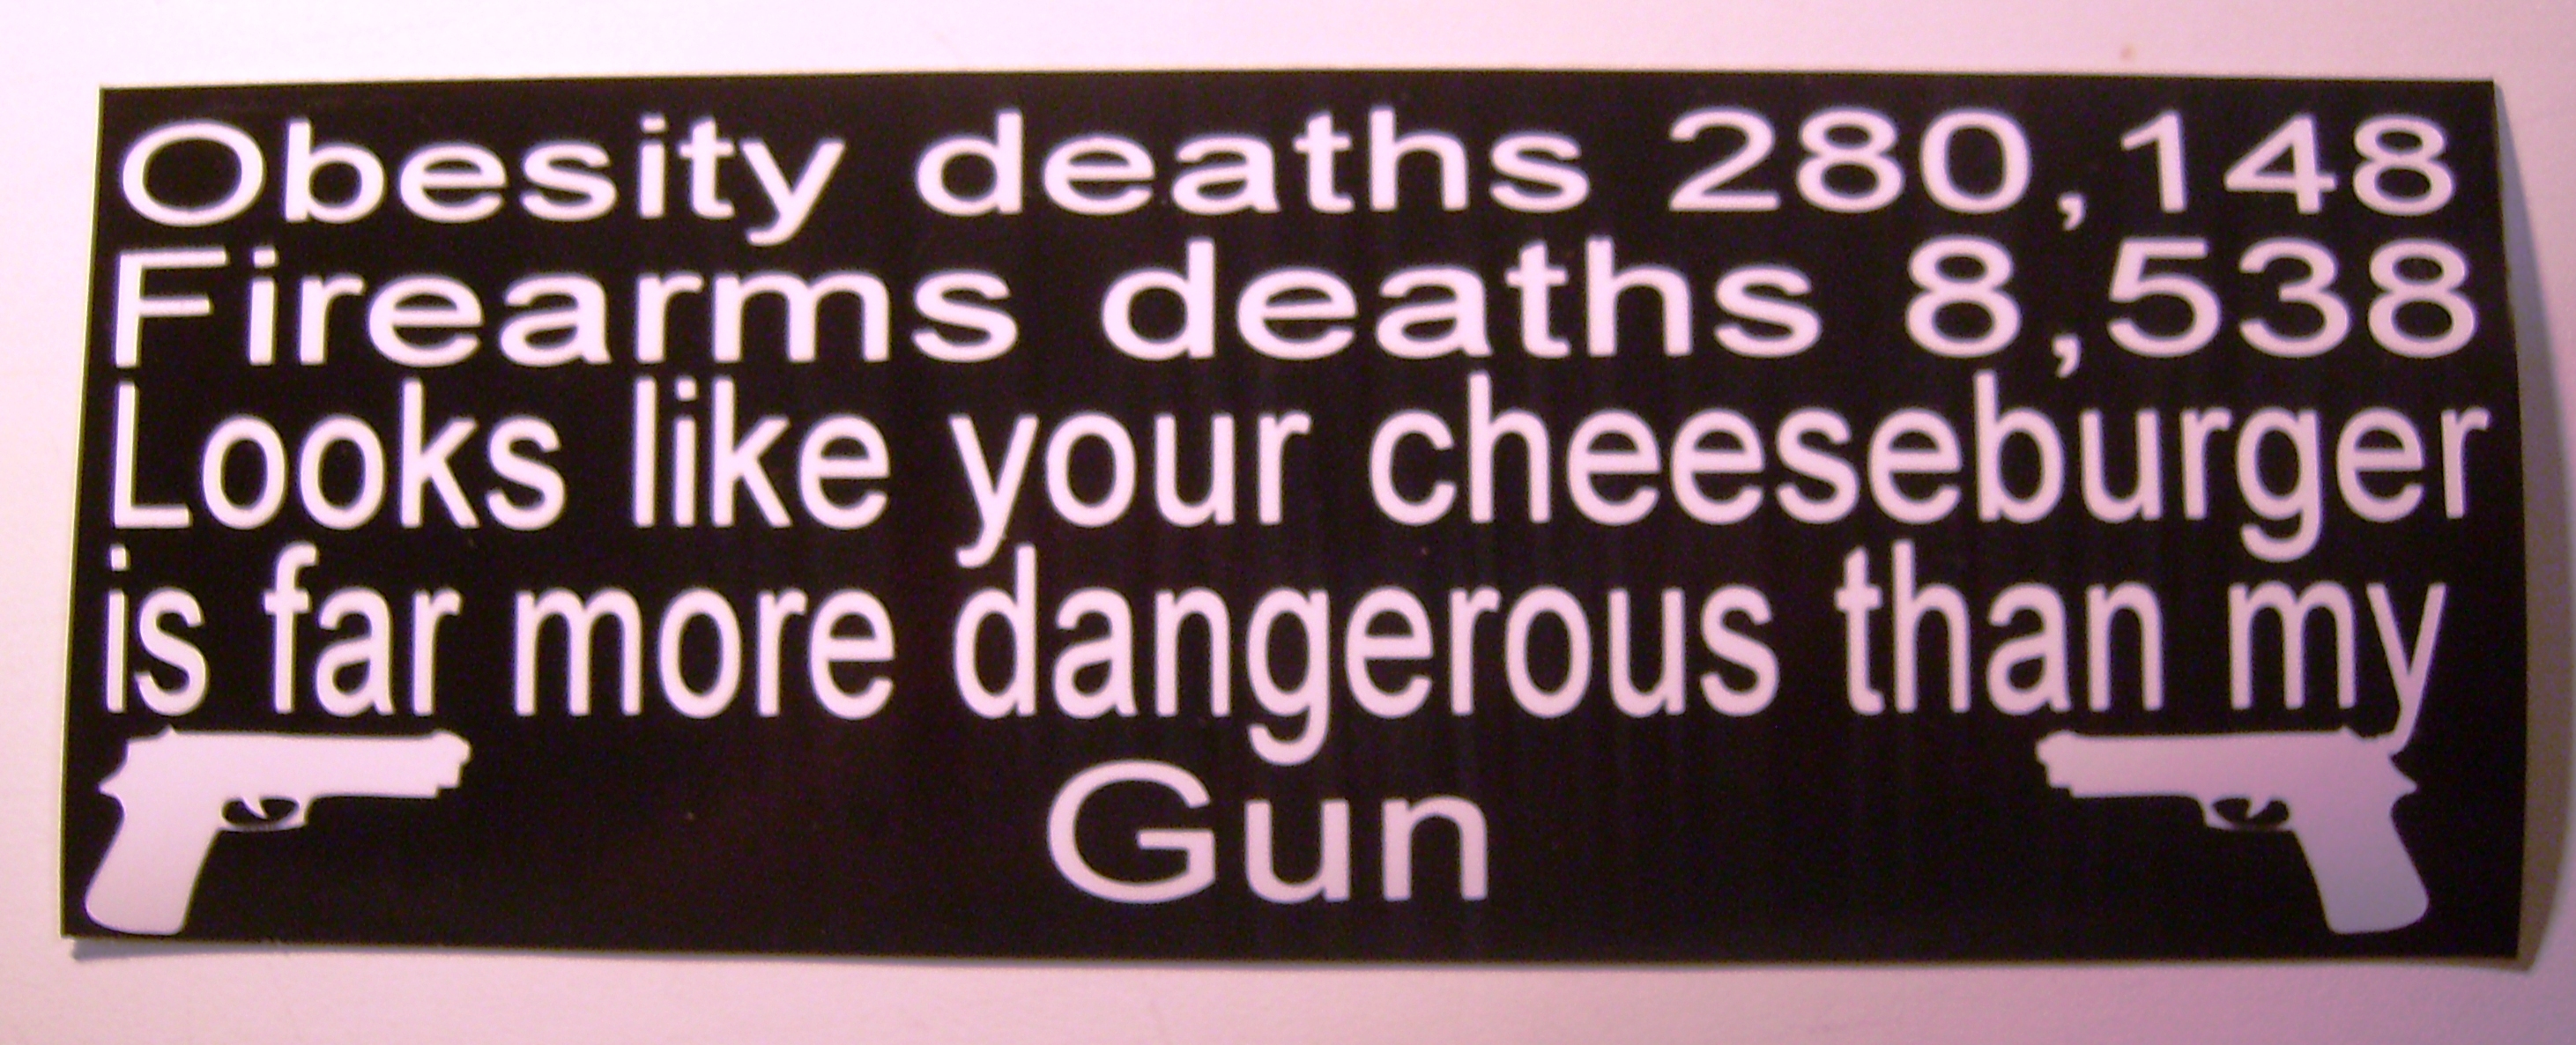 Great Pro Gun Quotes. QuotesGram